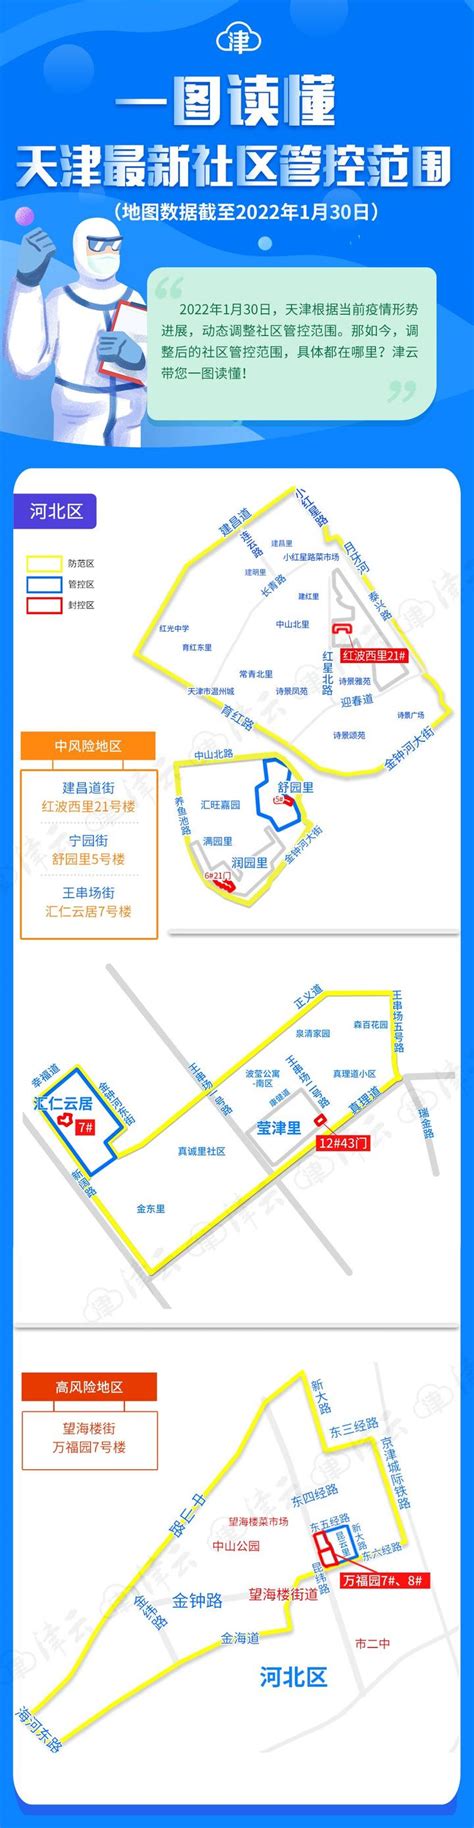 2020天津运河新天地夜市恢复营业及营业时间-天津夜市 天津的夜市现在有哪些地方_旅泊网